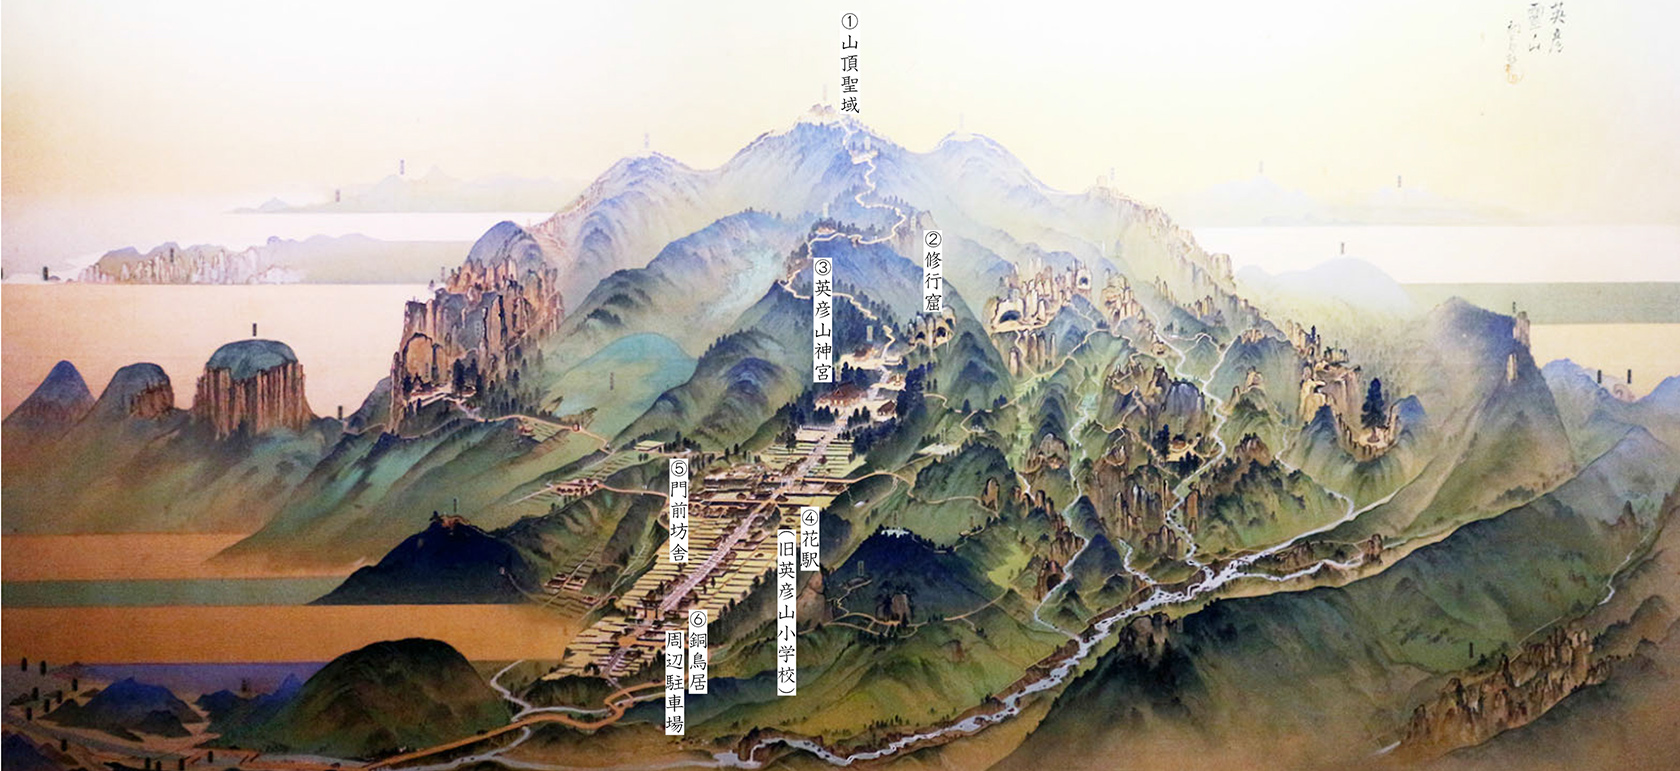 英彦山鳥瞰図。英彦山は、日本三大修験道といわれる大峯山、出羽三山より規模が大きい。